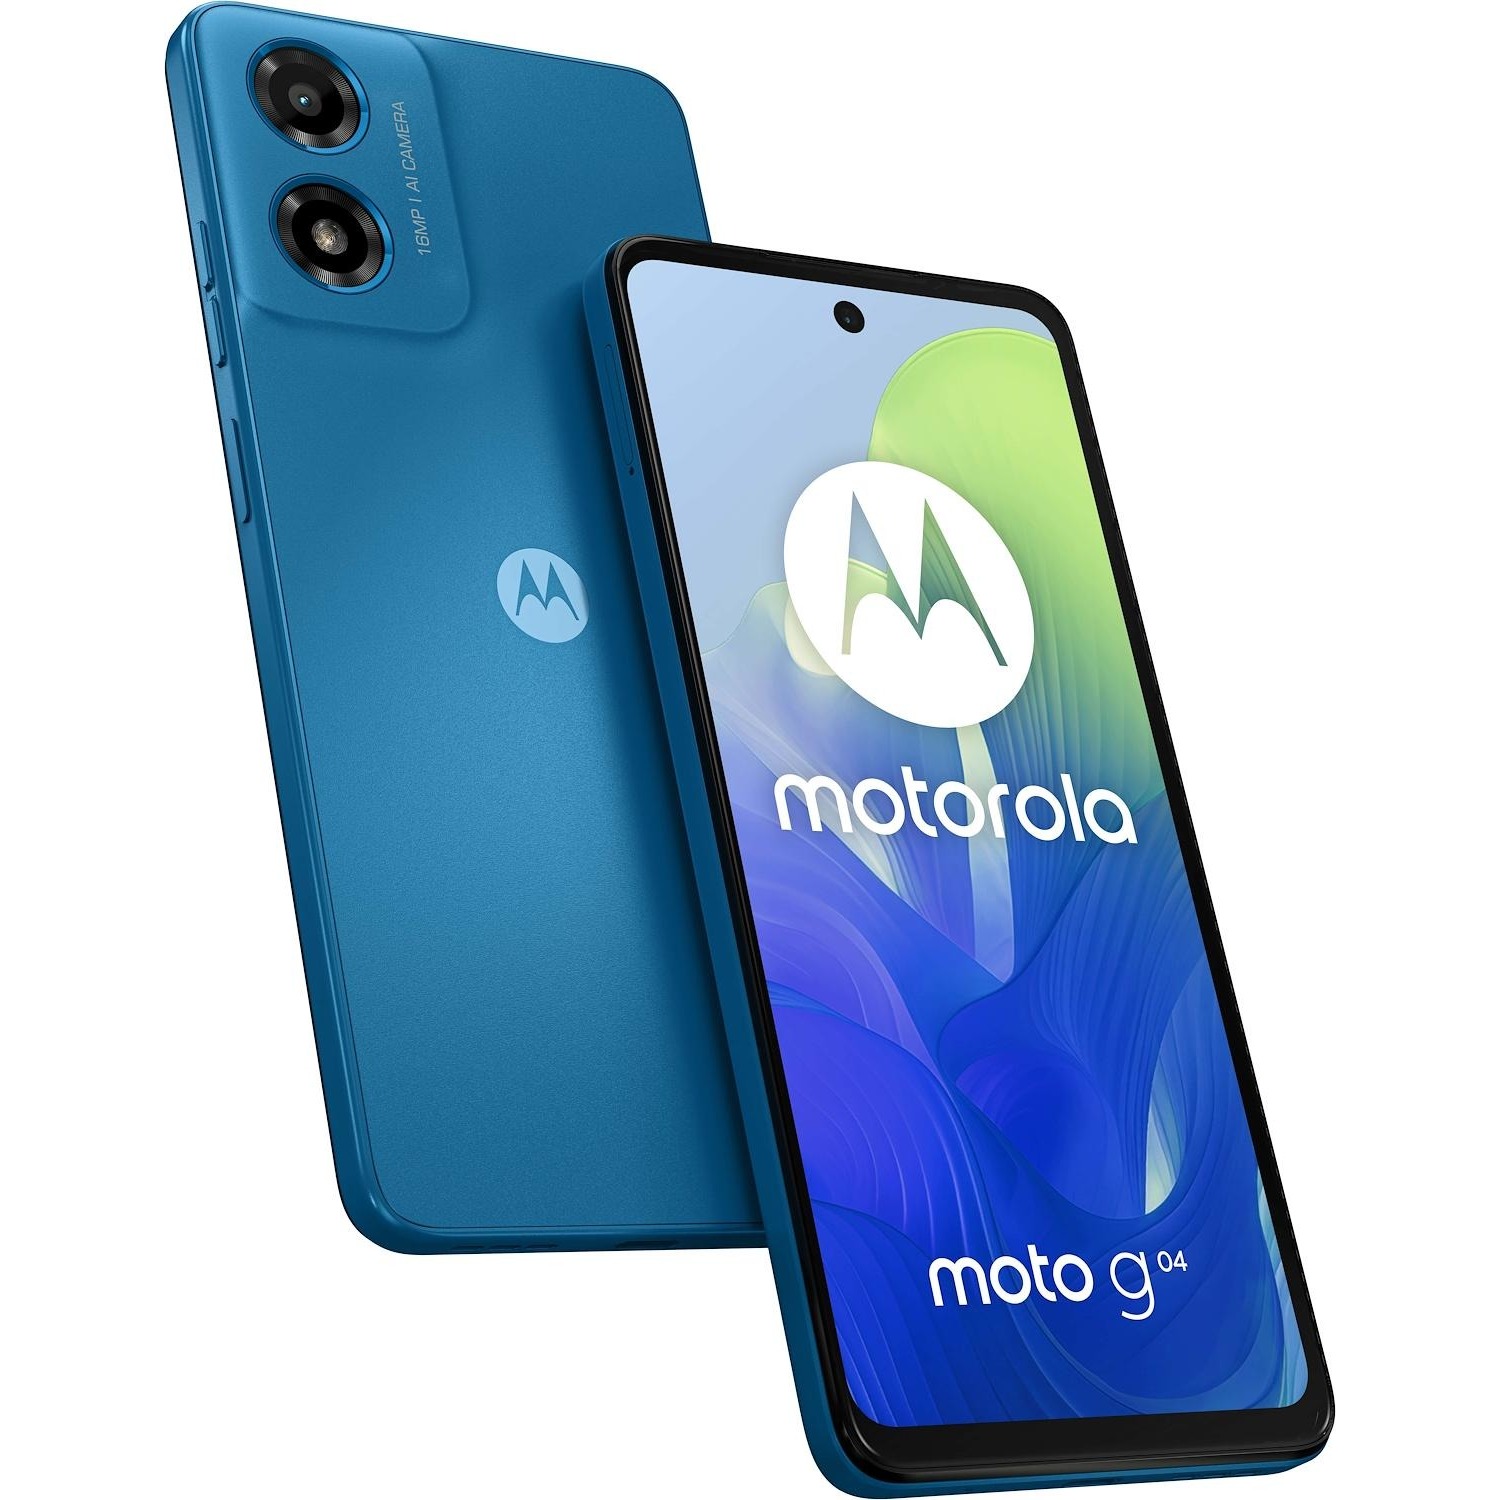 Immagine per Smartphone Motorola G04 4/64GB blue blu da DIMOStore